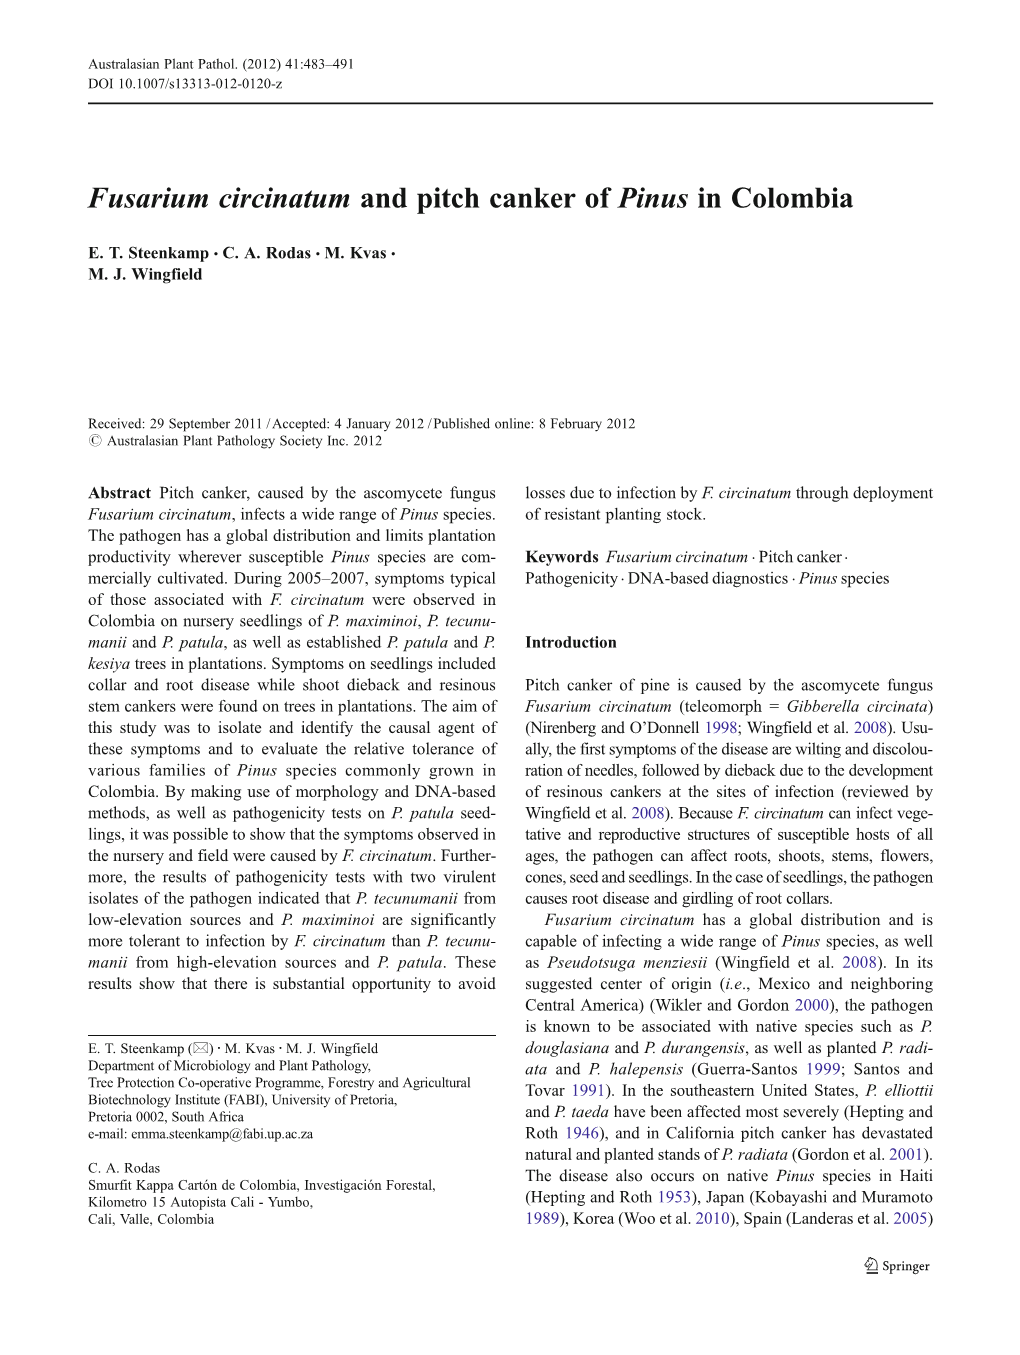 Fusarium Circinatum and Pitch Canker of Pinus in Colombia